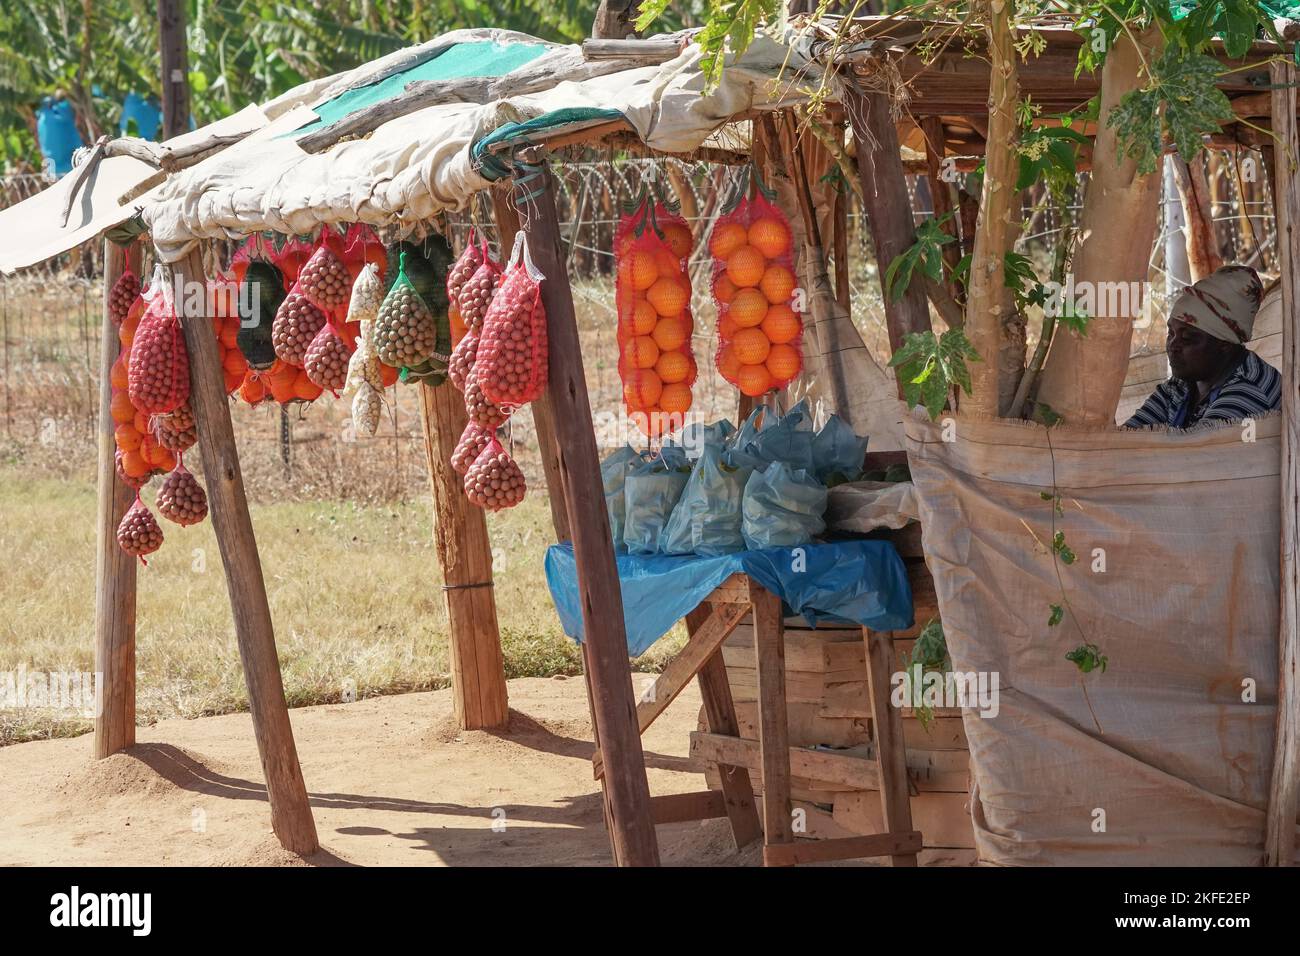 Obst und Nüsse Verkäufer oder Verkäufer in einem Straßenstand vor einer Farm in einer ländlichen Gegend von Mpumalanga, Südafrika Konzept Kleinunternehmer in Afrika Stockfoto